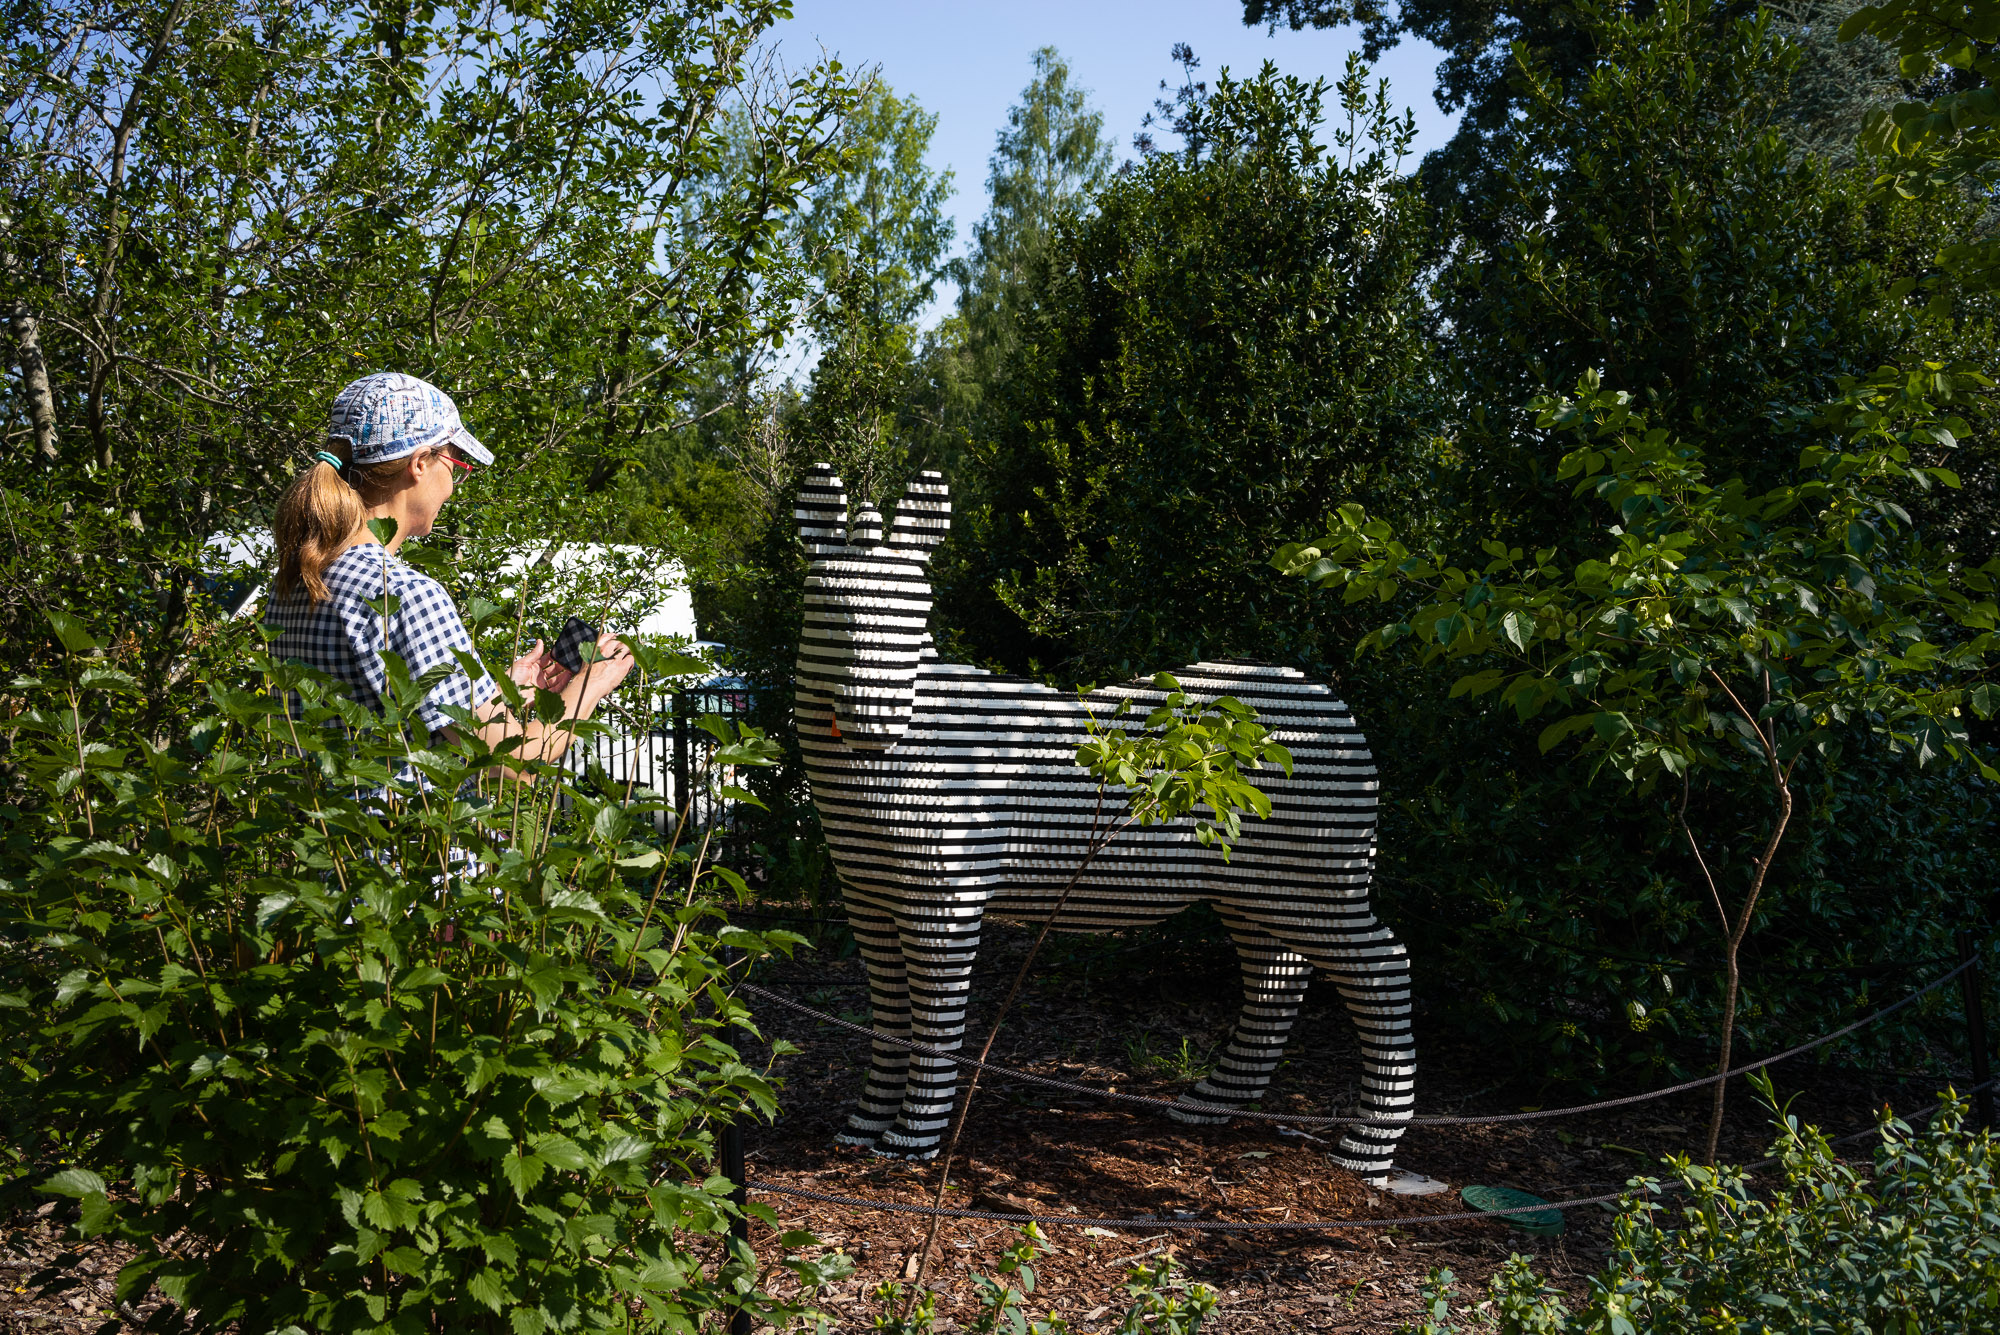 Fancy Zebra sculpture by Sean Kenney